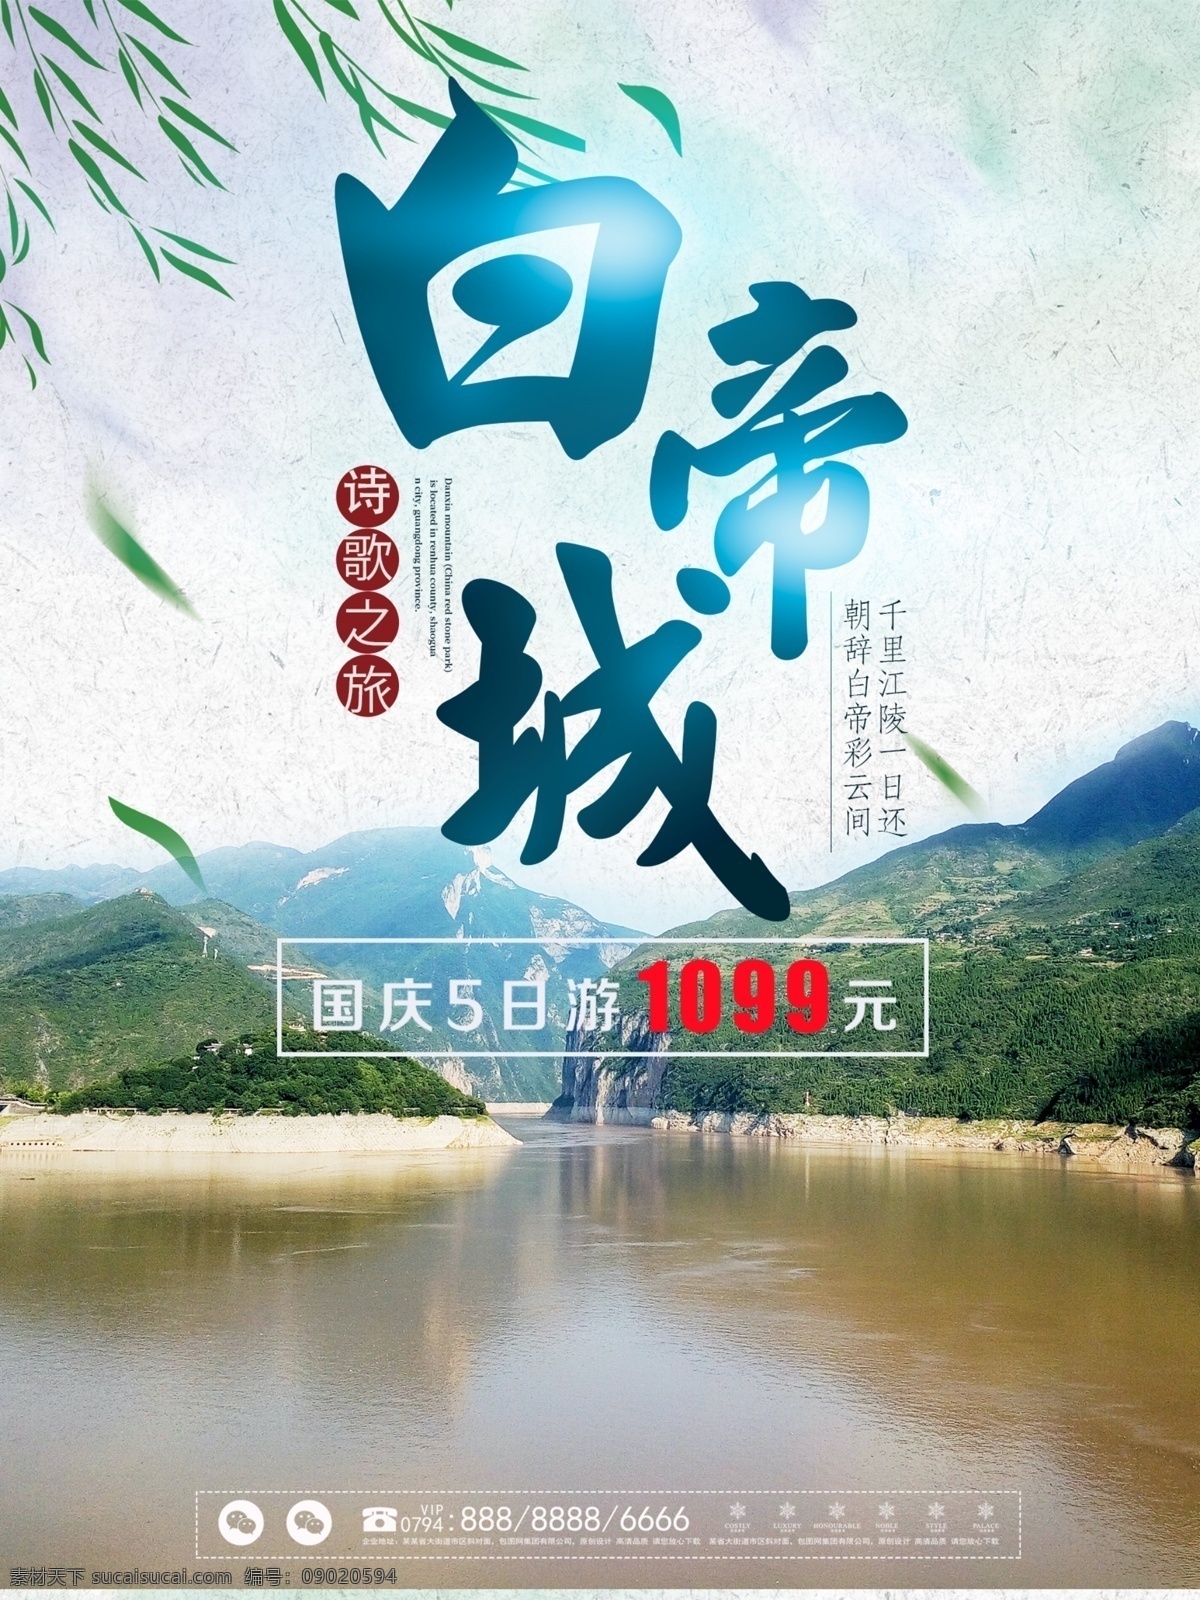 中国 风 刘烨 白帝城 诗歌 之旅 旅游 海报 中国风 诗歌之旅